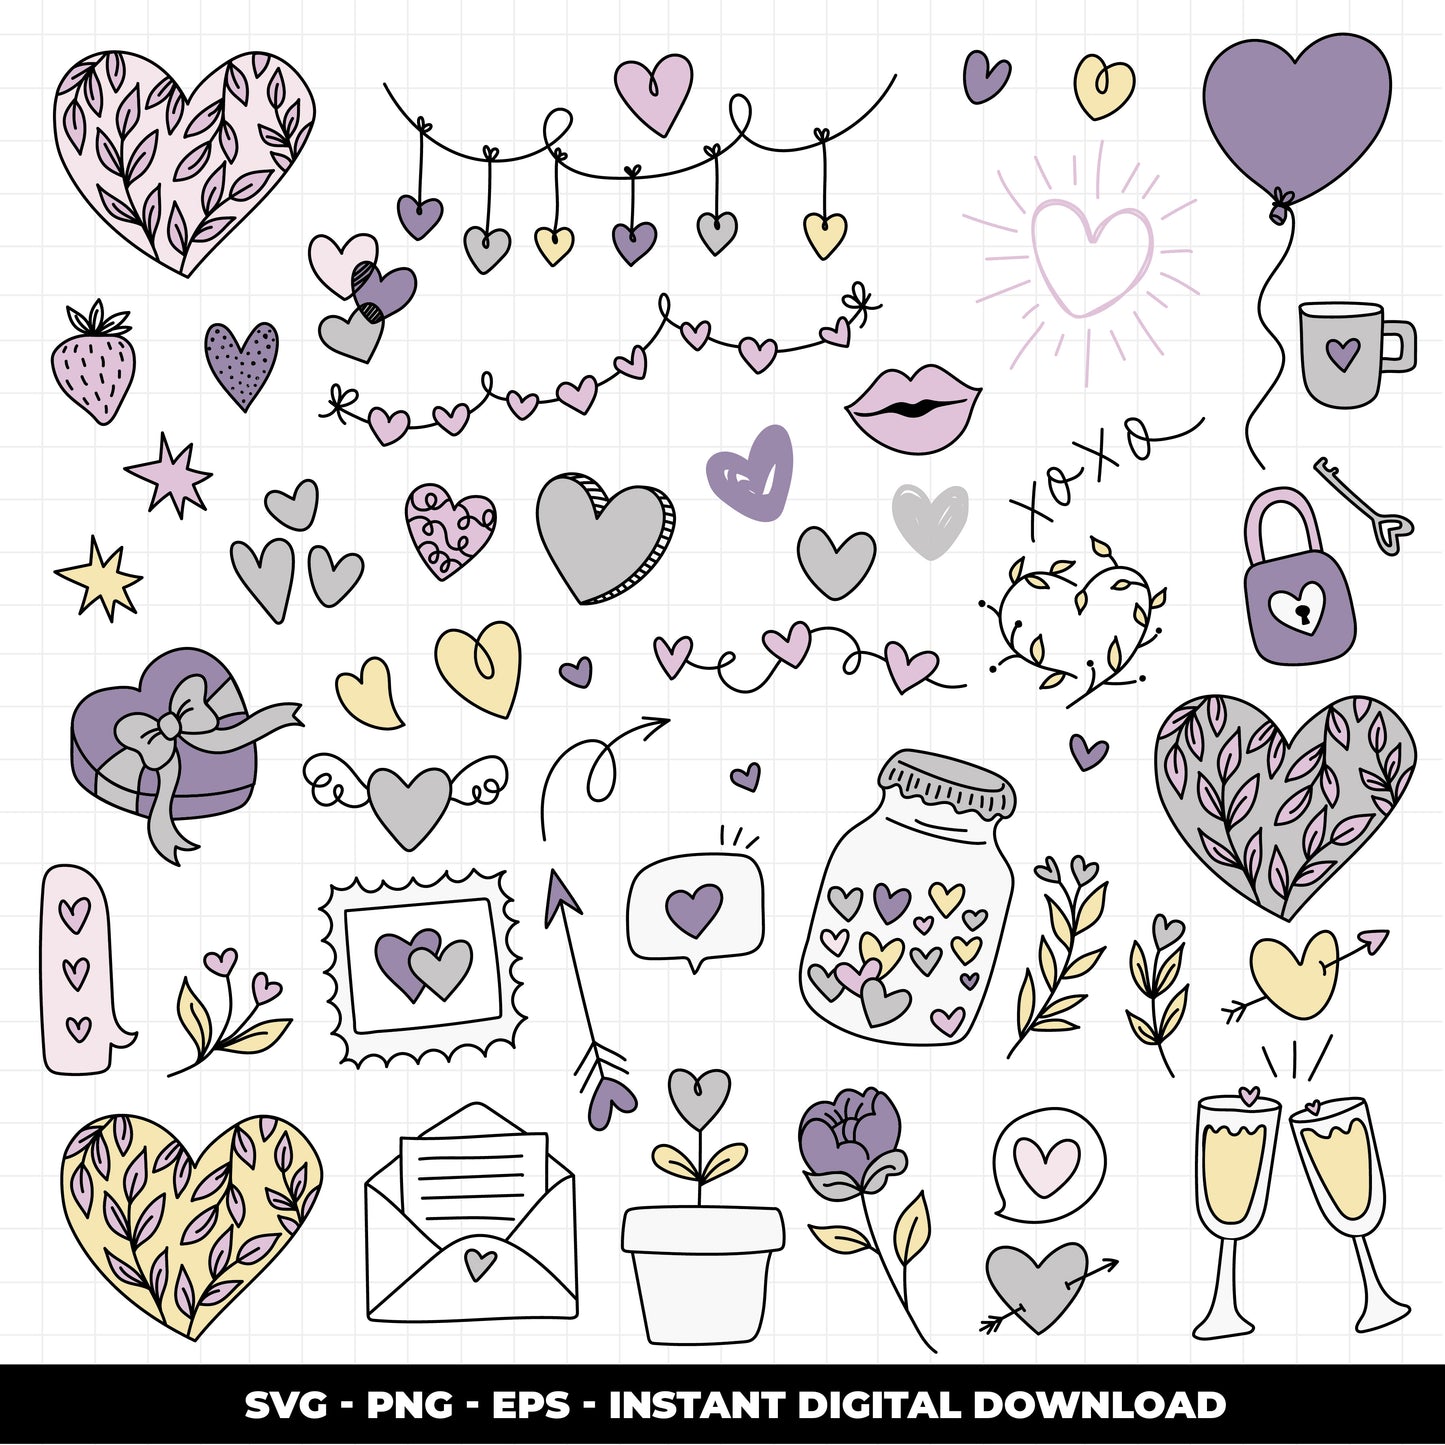 COD1013- Doodle Heart svg, Self Love Svg, Heart svg, Hand-drawn svg, True love svg